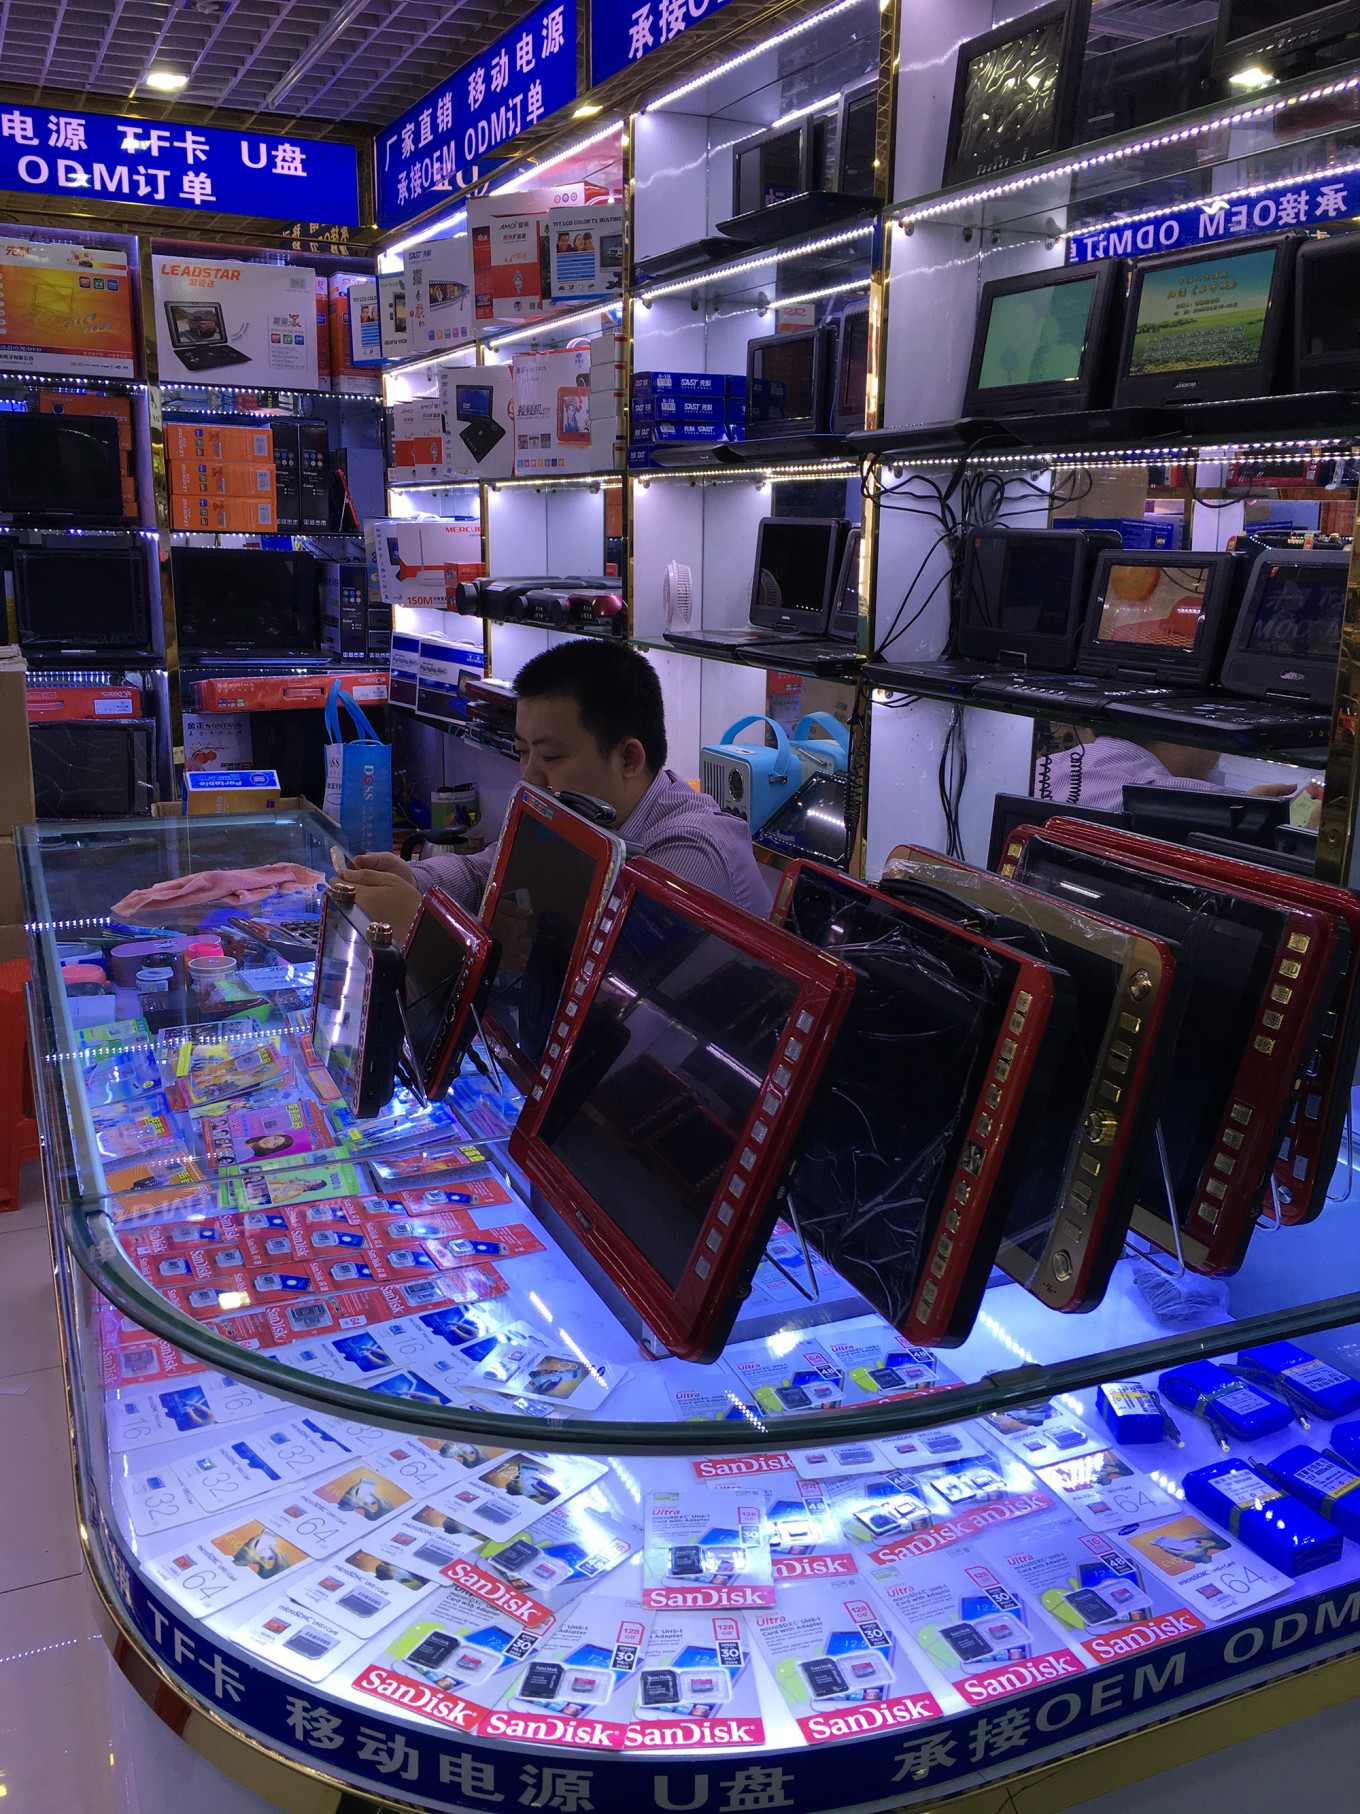 Китай электроника в россию. Рынок электроники в Шэньчжэне. Китайский рынок электроники. Компьютерный магазин. Магазин китайских телефонов.